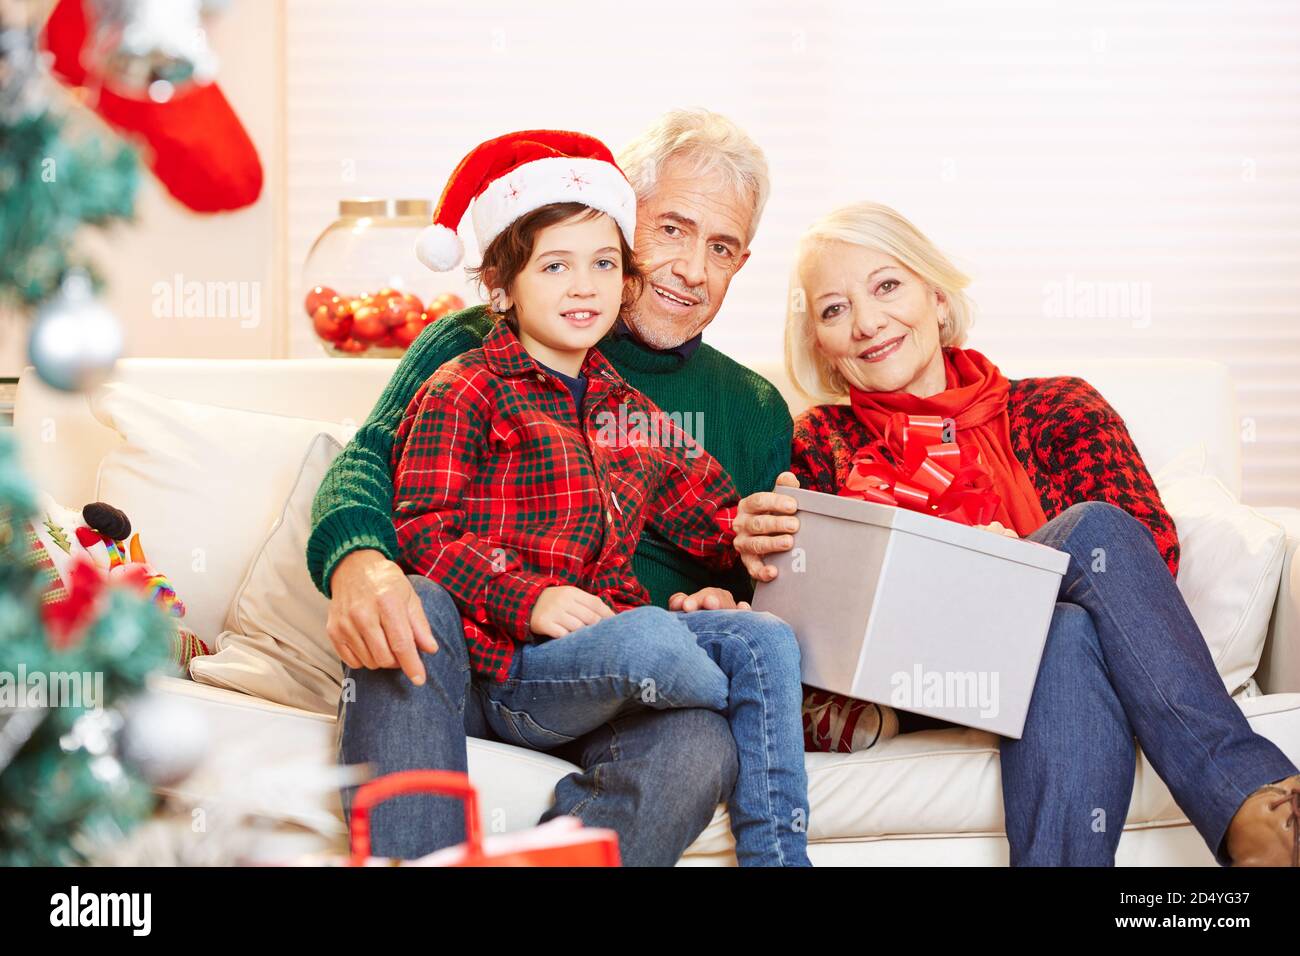 Enkel feiert Weihnachten mit seinen Großeltern auf dem Sofa als nächstes Zum Weihnachtsbaum Stockfoto